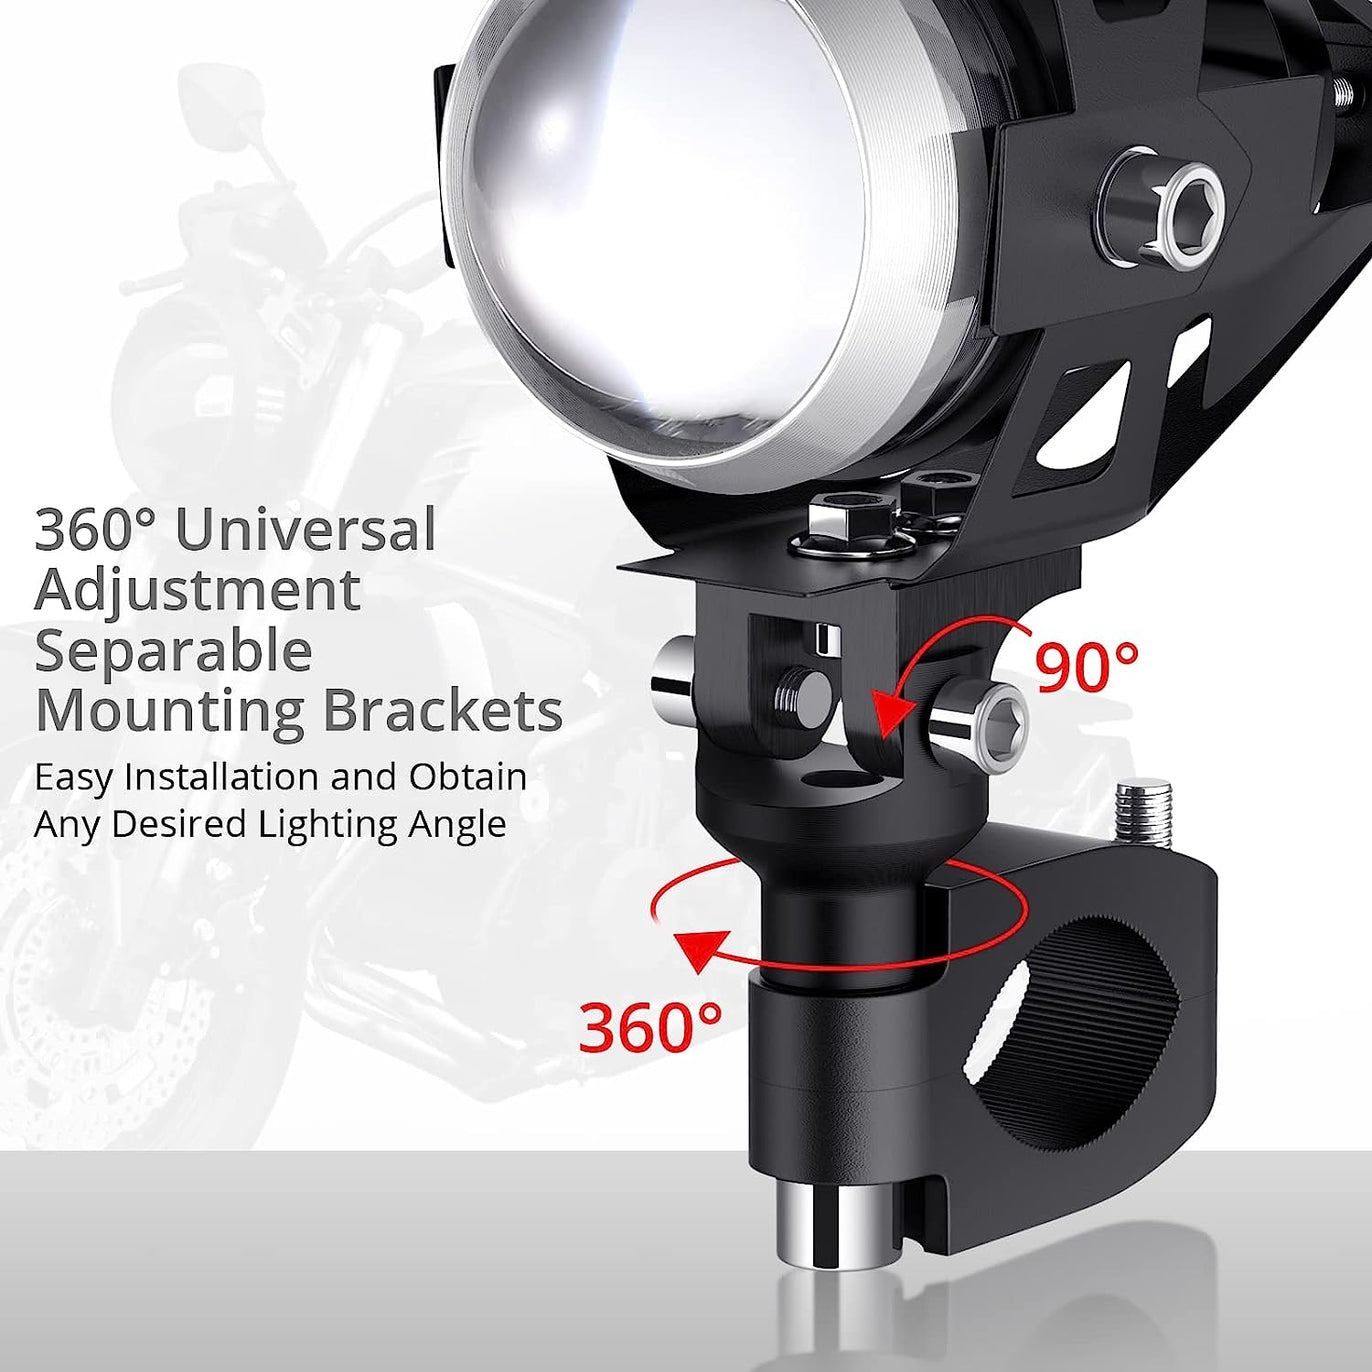 PROZOR 2PCS Motorcycle Headlights 15W U5 3000 Lumen Fog Spot Lights Waterproof